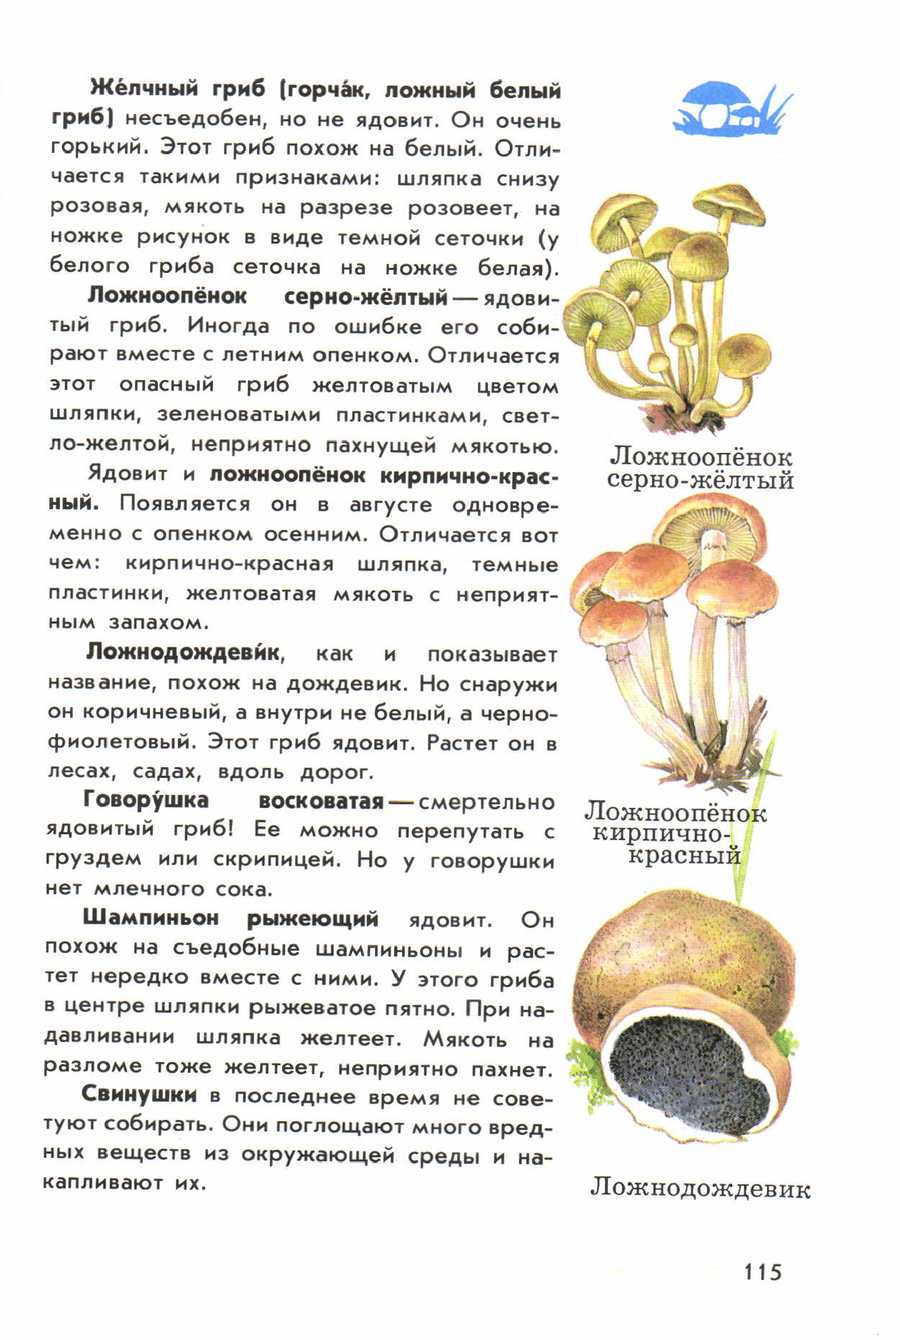 ядовитые грибы фото и описание